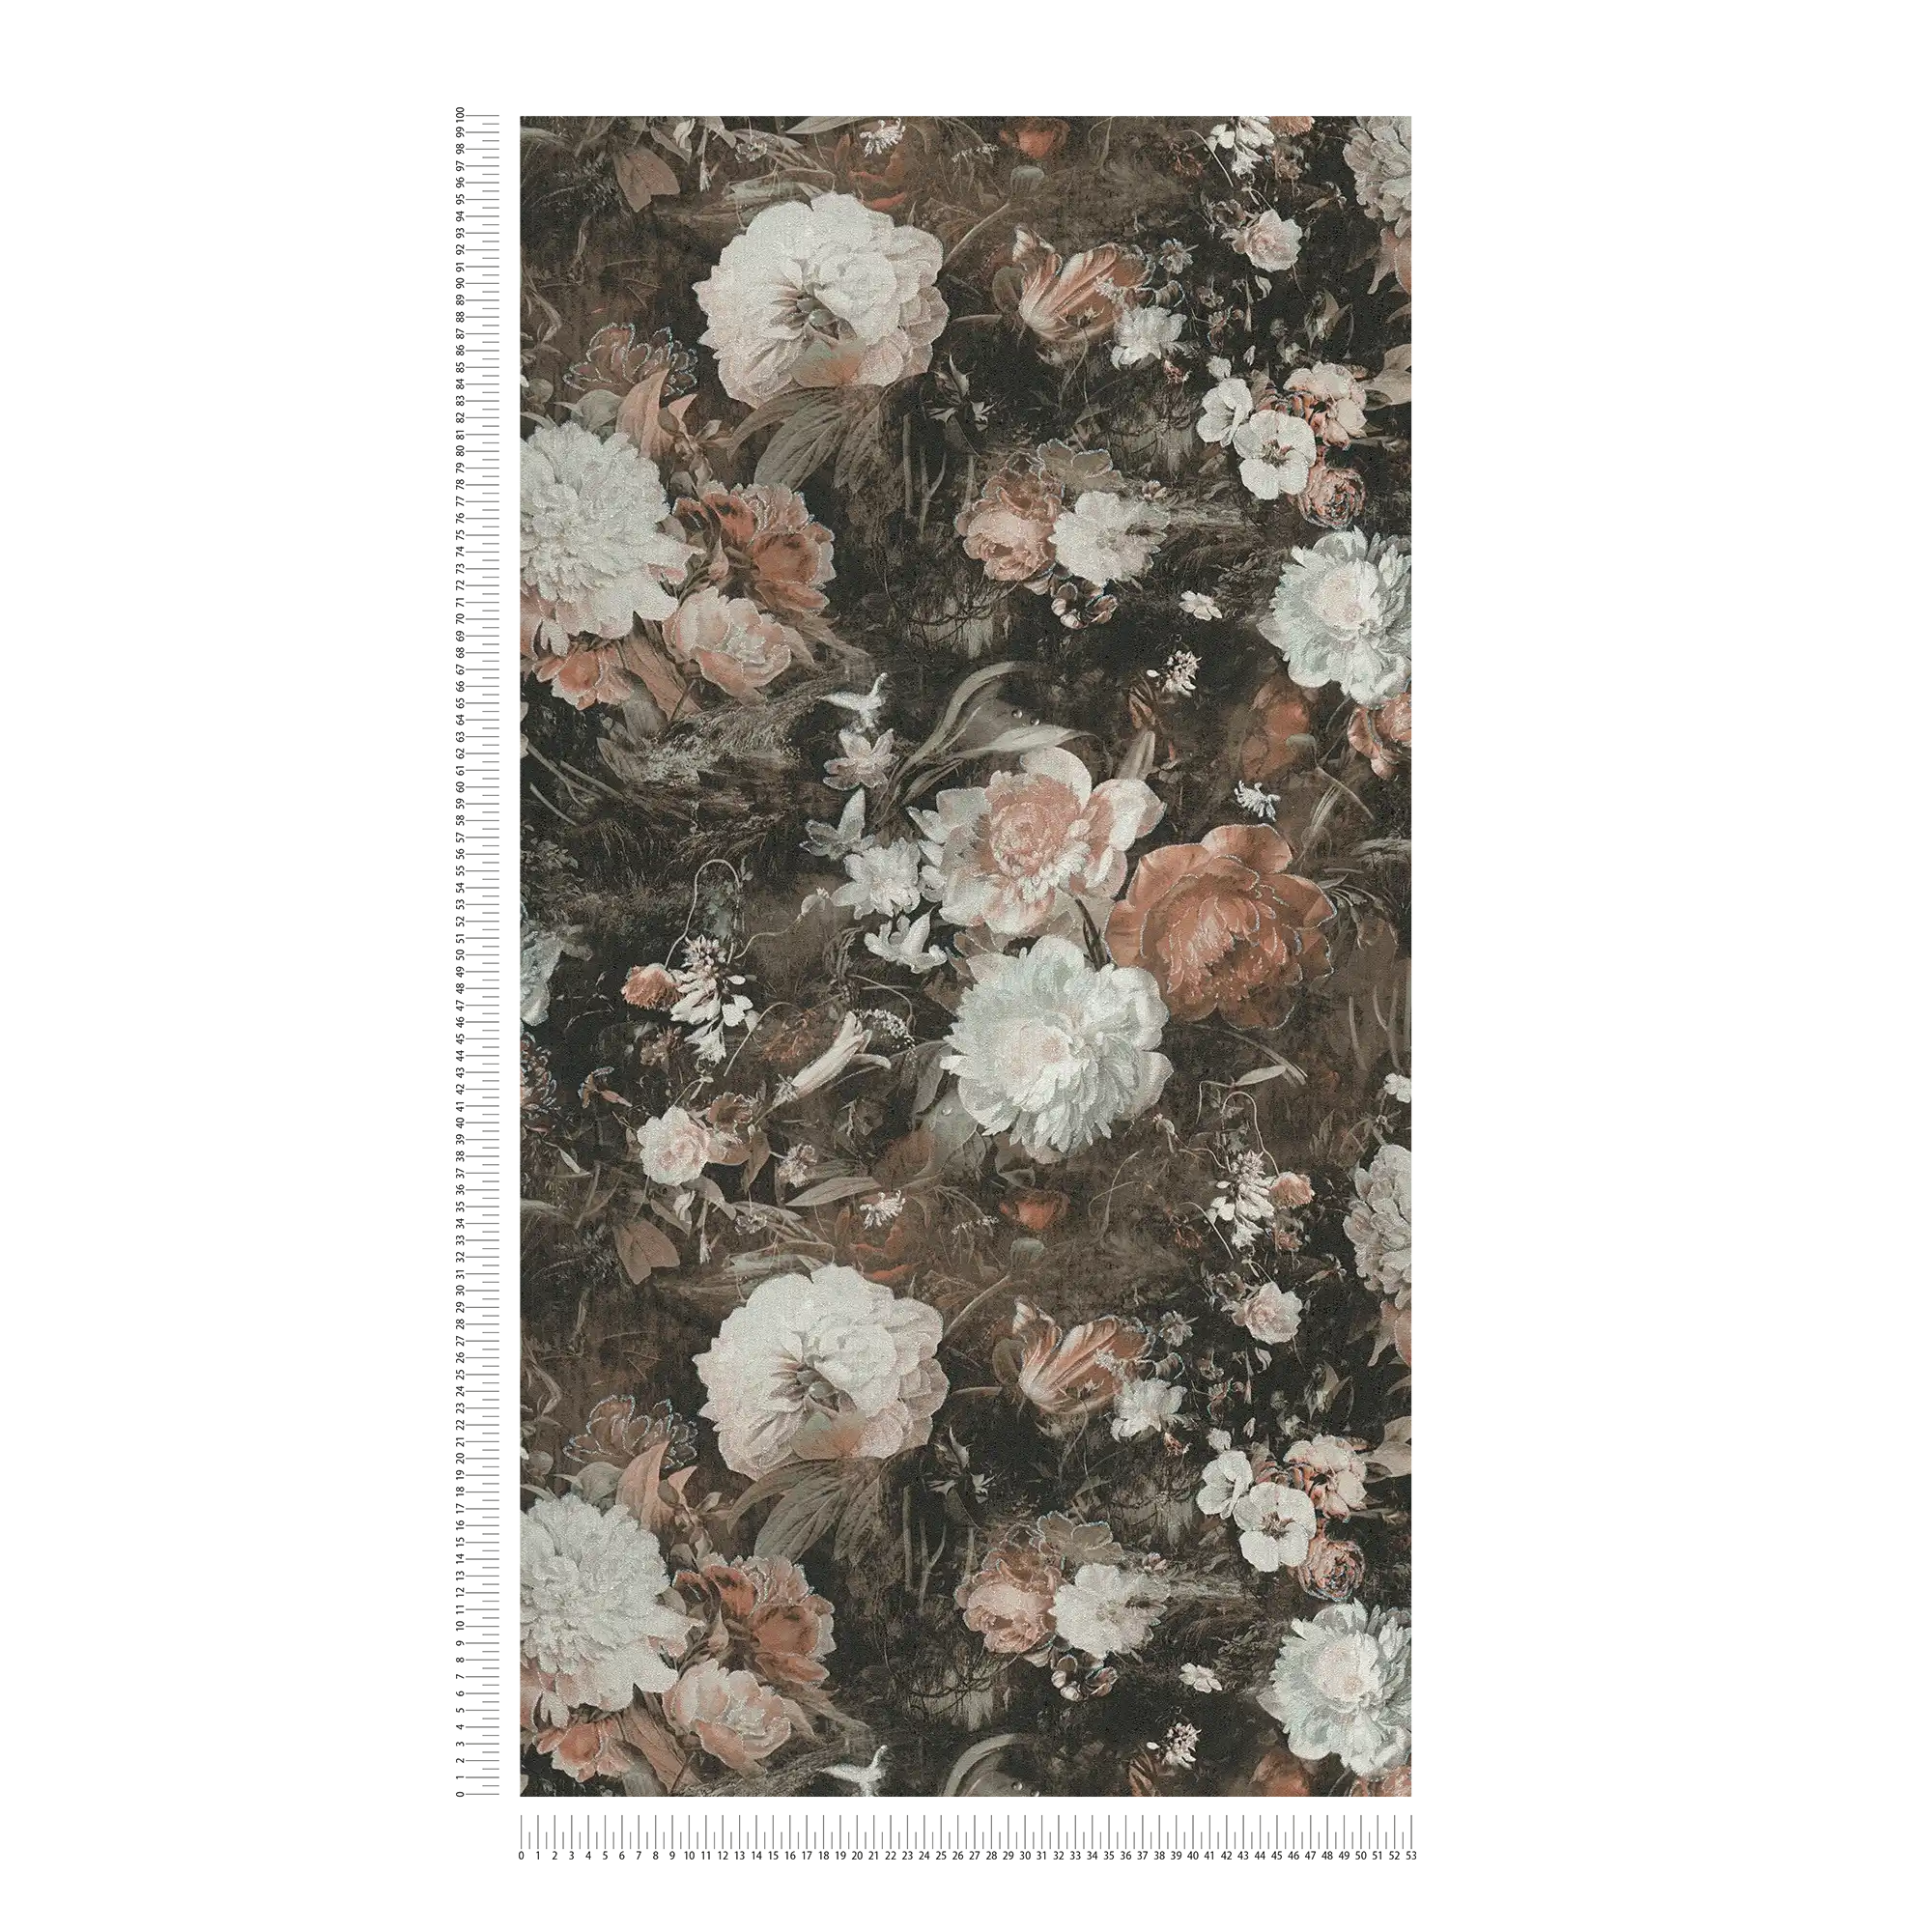             Vintage Blumentapete Klassik Rosen-Muster – Creme, Braun
        